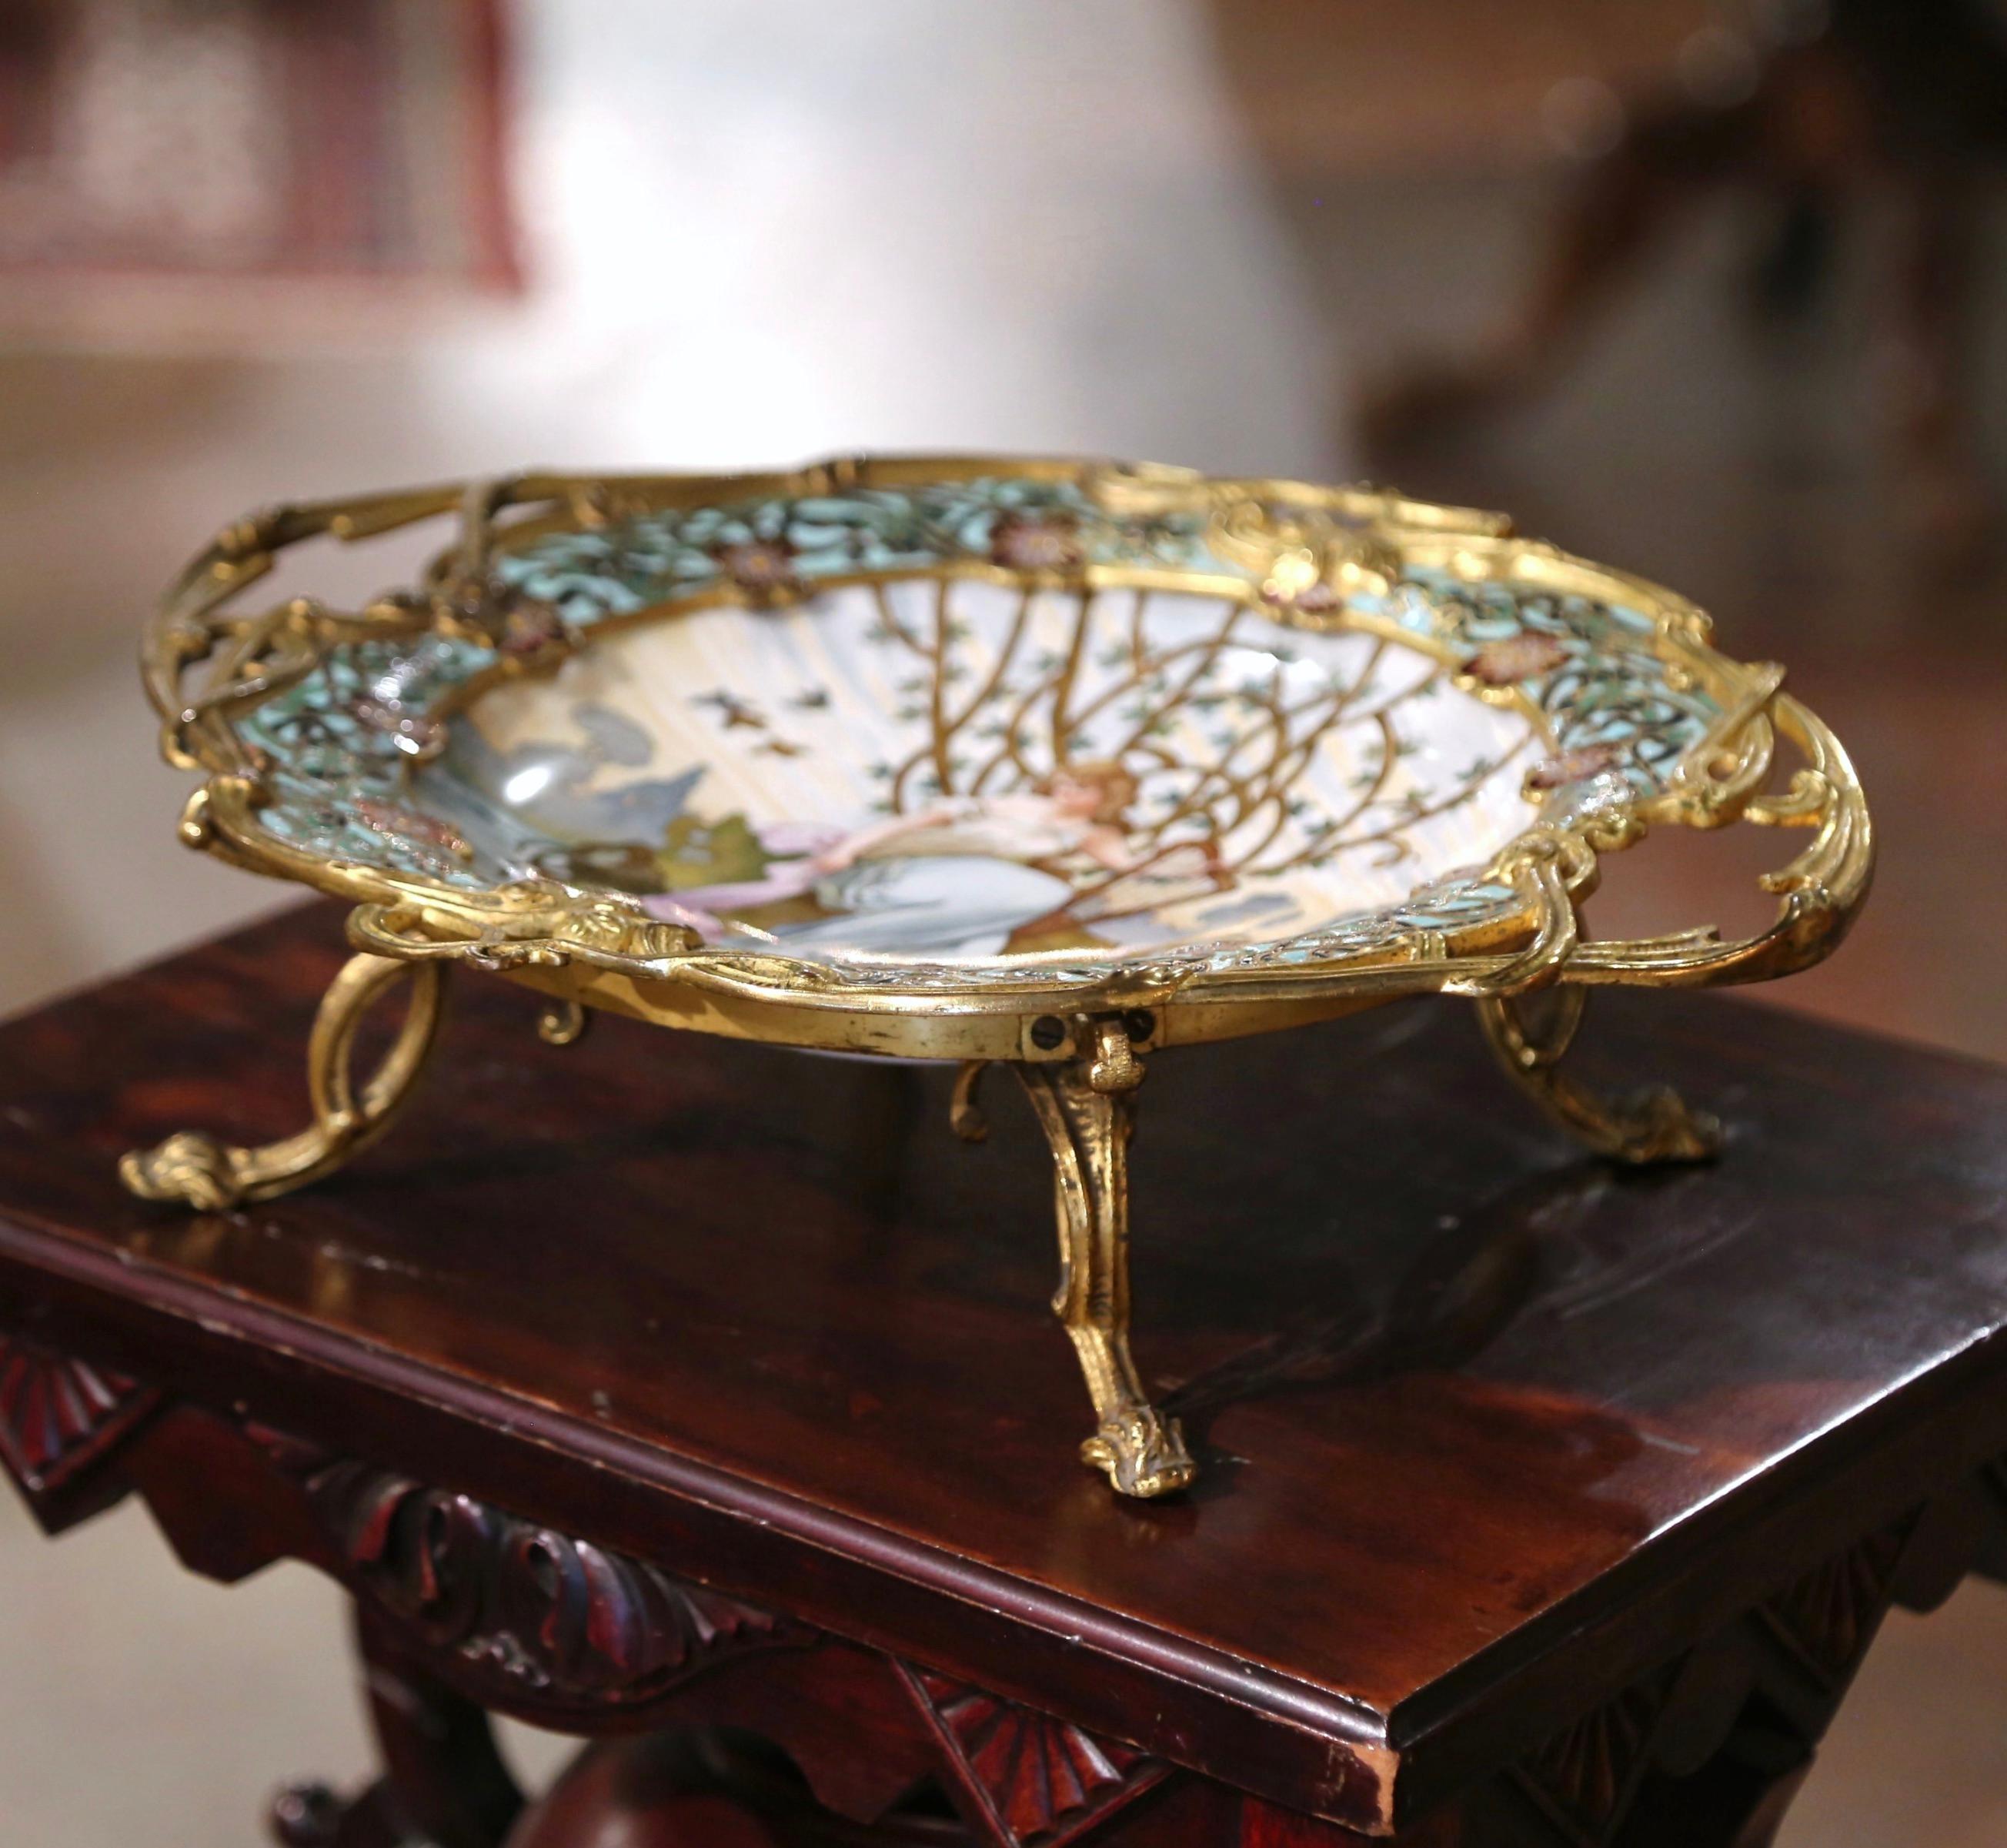 Décorez une table à manger ou une console avec cet élégant centre de table antique. Fabriqué en France vers 1890 et signé Tisserand, le plateau coloré repose sur de petits pieds incurvés au-dessus d'une assiette ovale en porcelaine décorée d'une